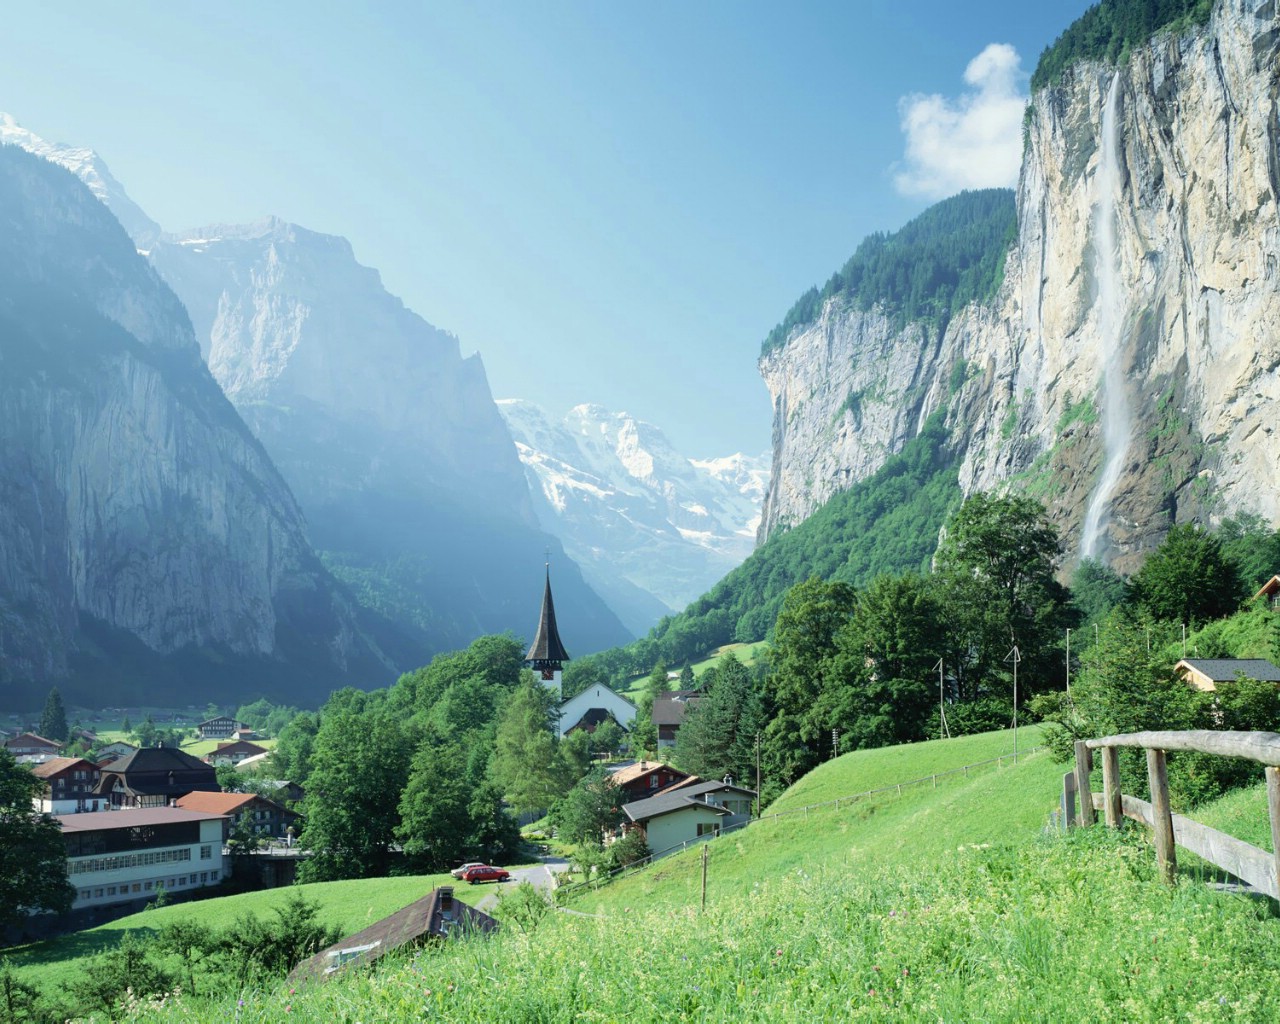 壁纸1280x1024高精度瑞士风光 瑞士风景 瑞士旅游景点switzerland vacation switzerland Travel Spot壁纸 瑞士旅游风景壁纸 瑞士旅游风景图片 瑞士旅游风景素材 人文壁纸 人文图库 人文图片素材桌面壁纸